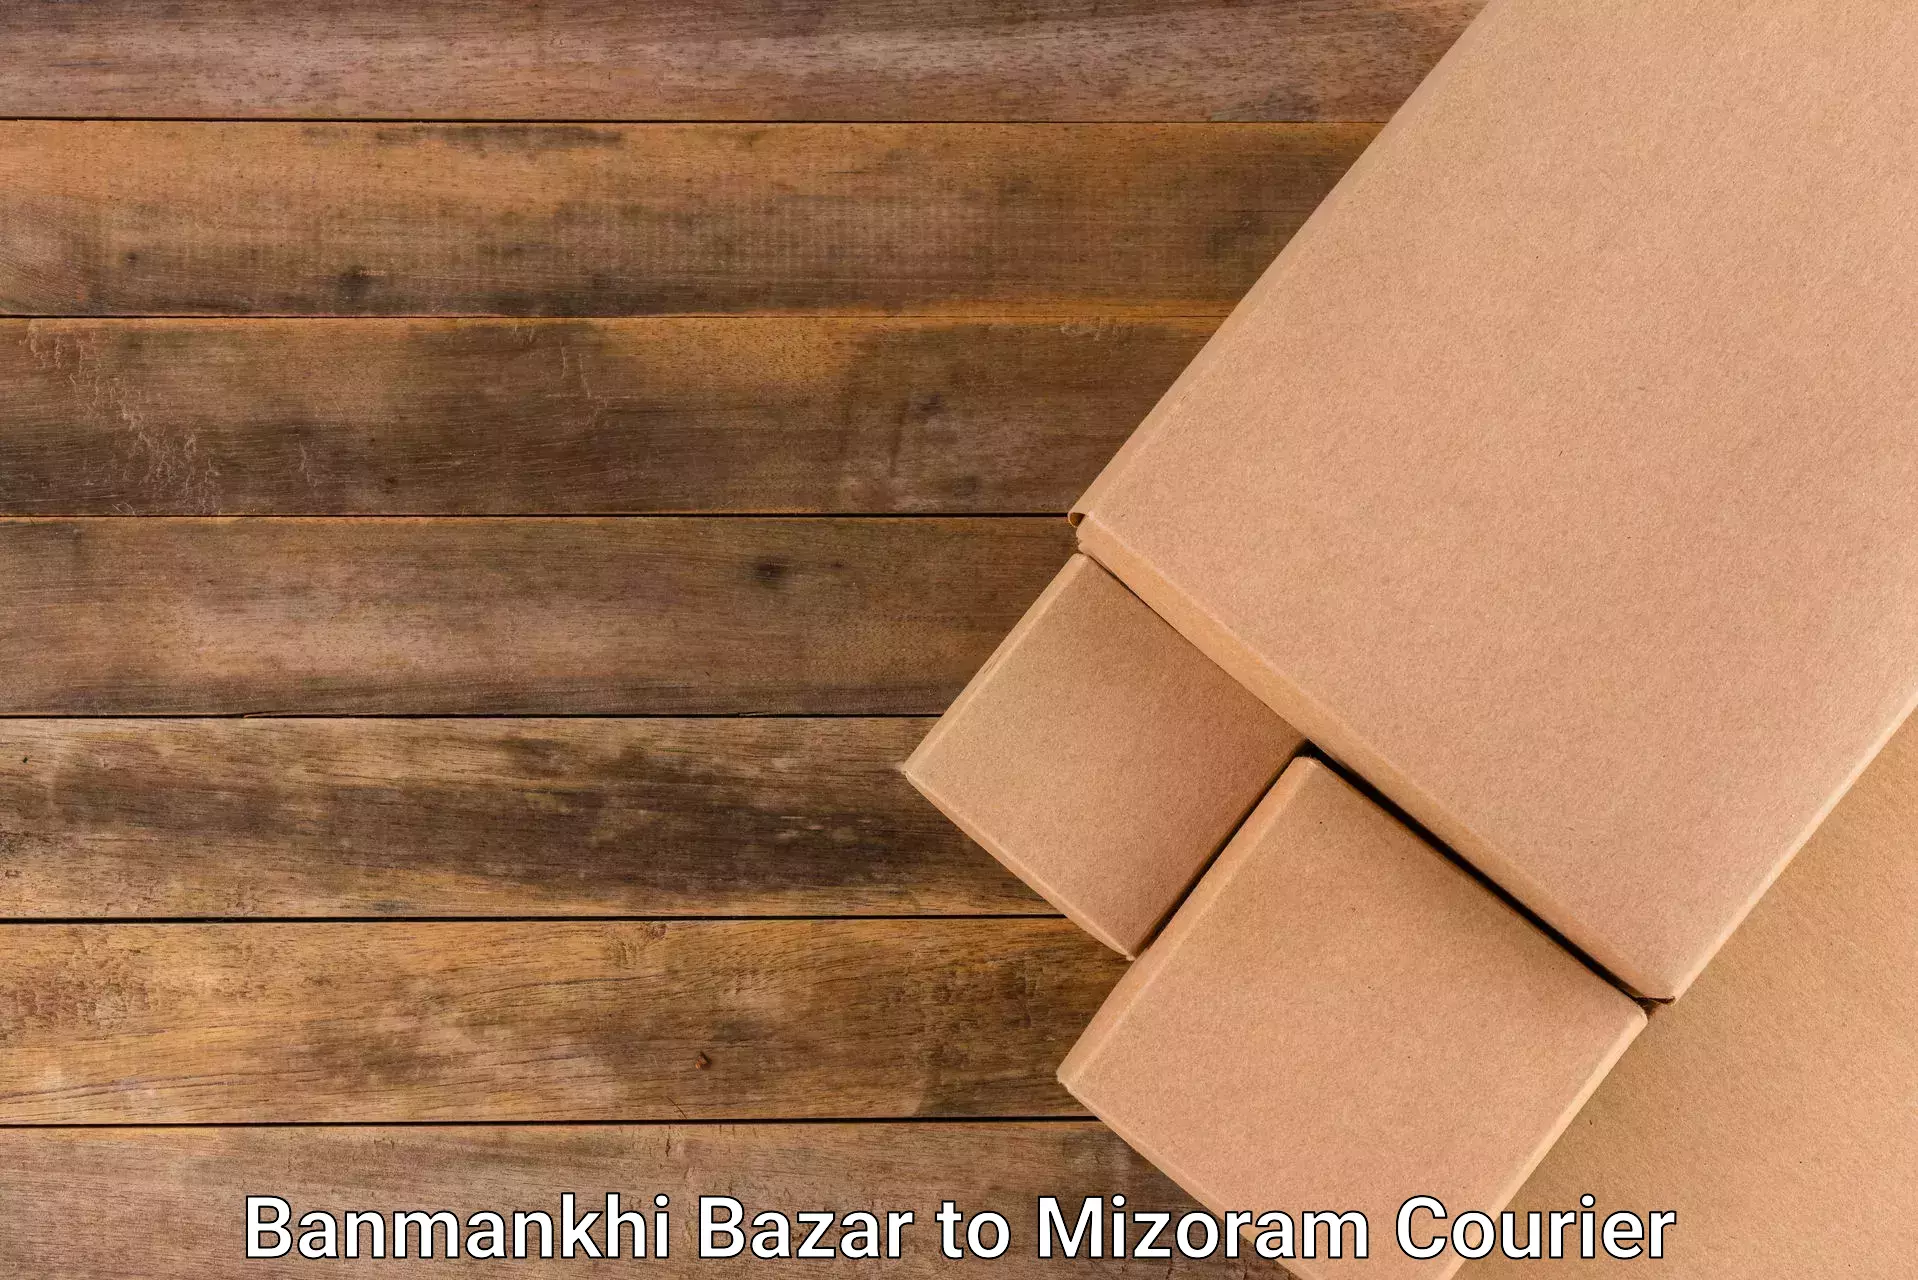 Package delivery network Banmankhi Bazar to Kolasib